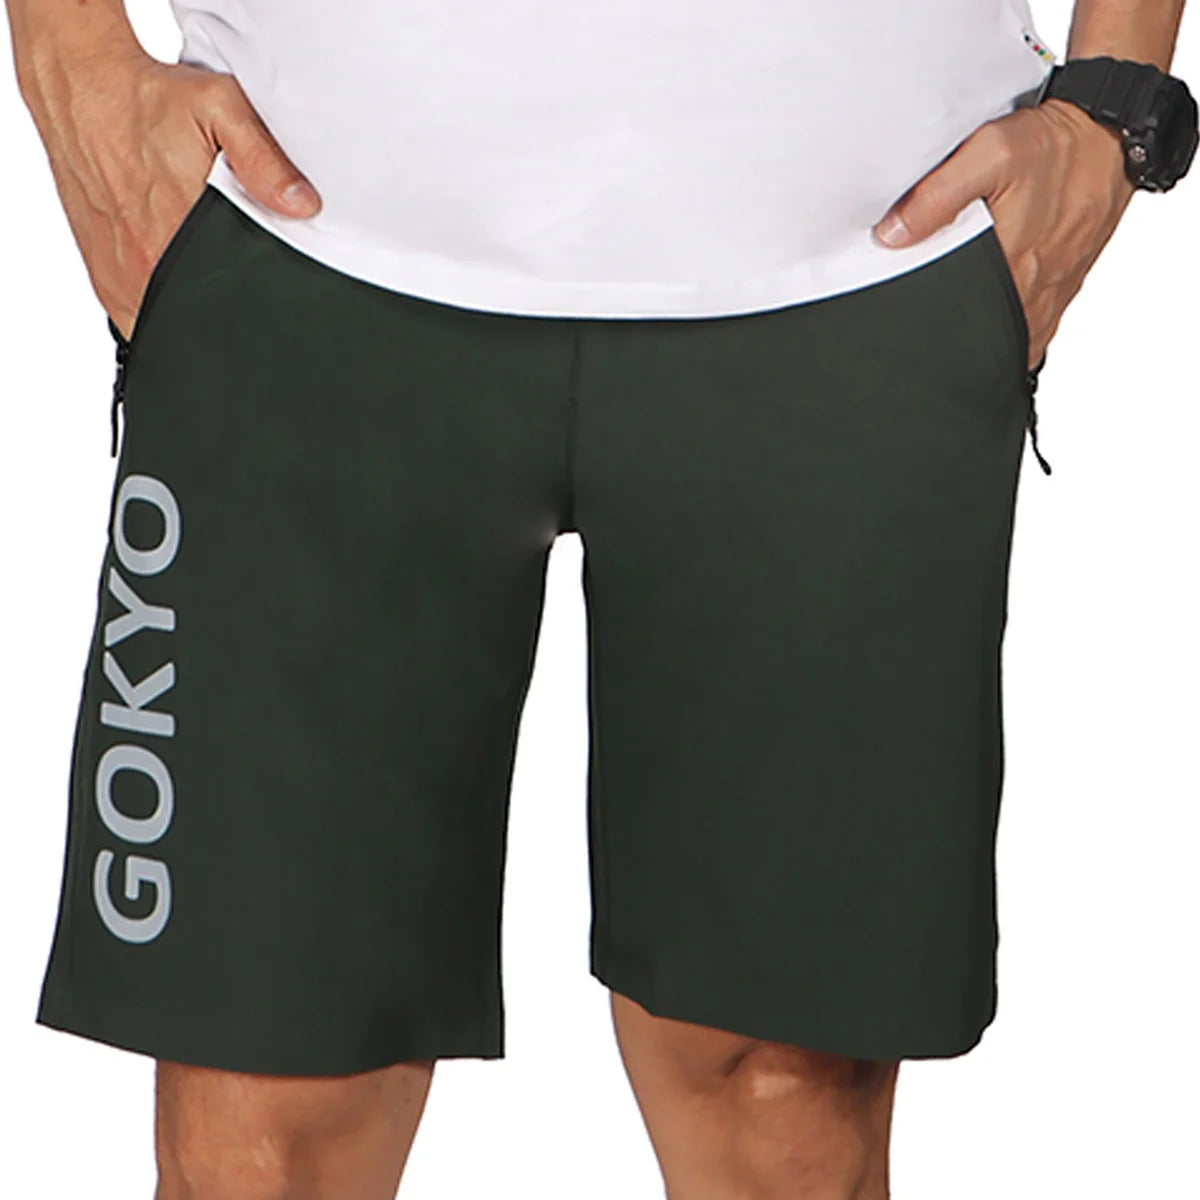 Gokyo Men's Shorts